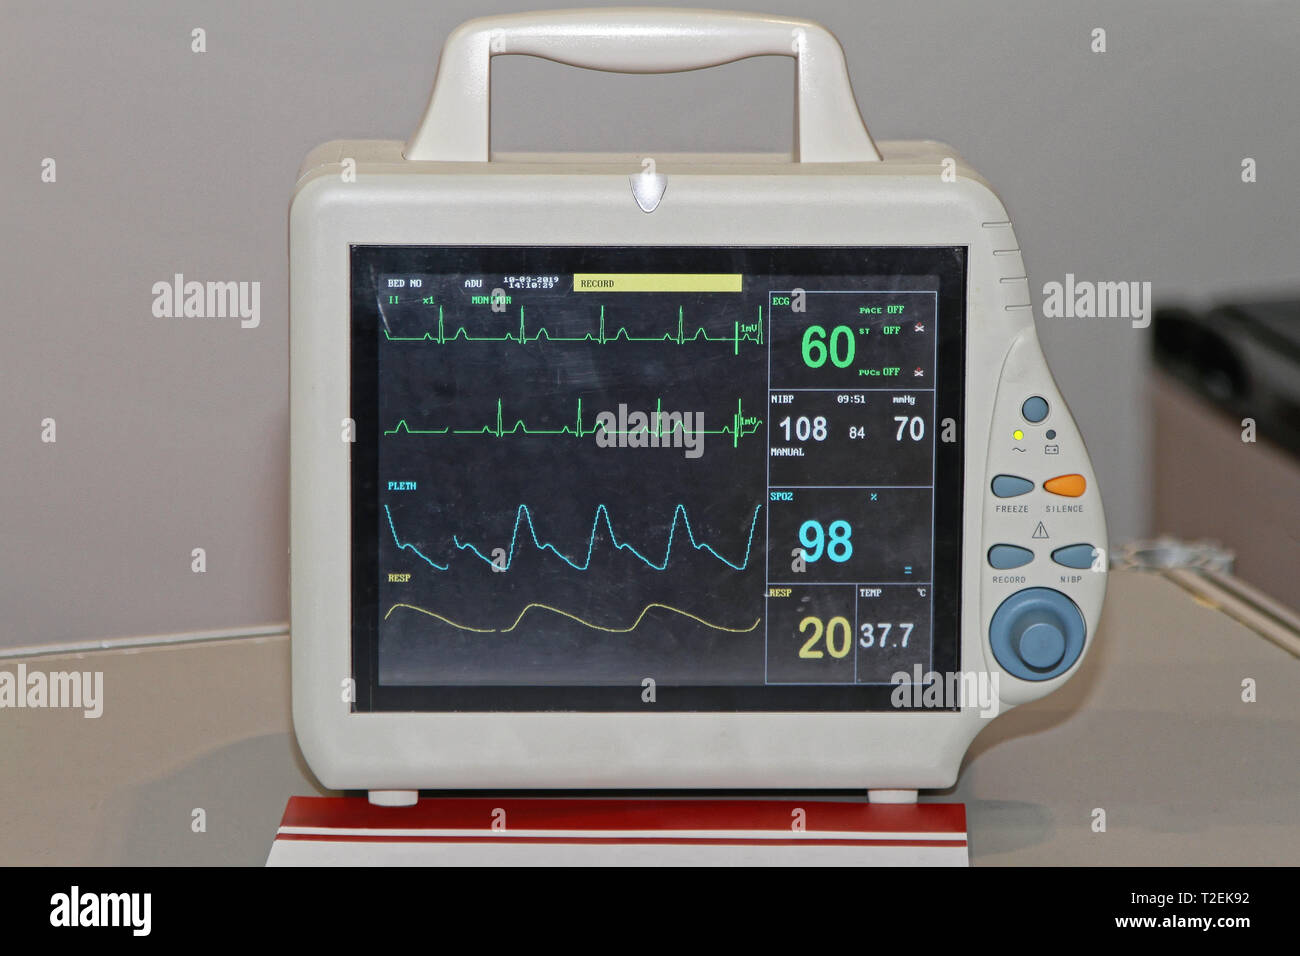 La fréquence cardiaque à l'hôpital Unité moniteur patient Photo Stock -  Alamy